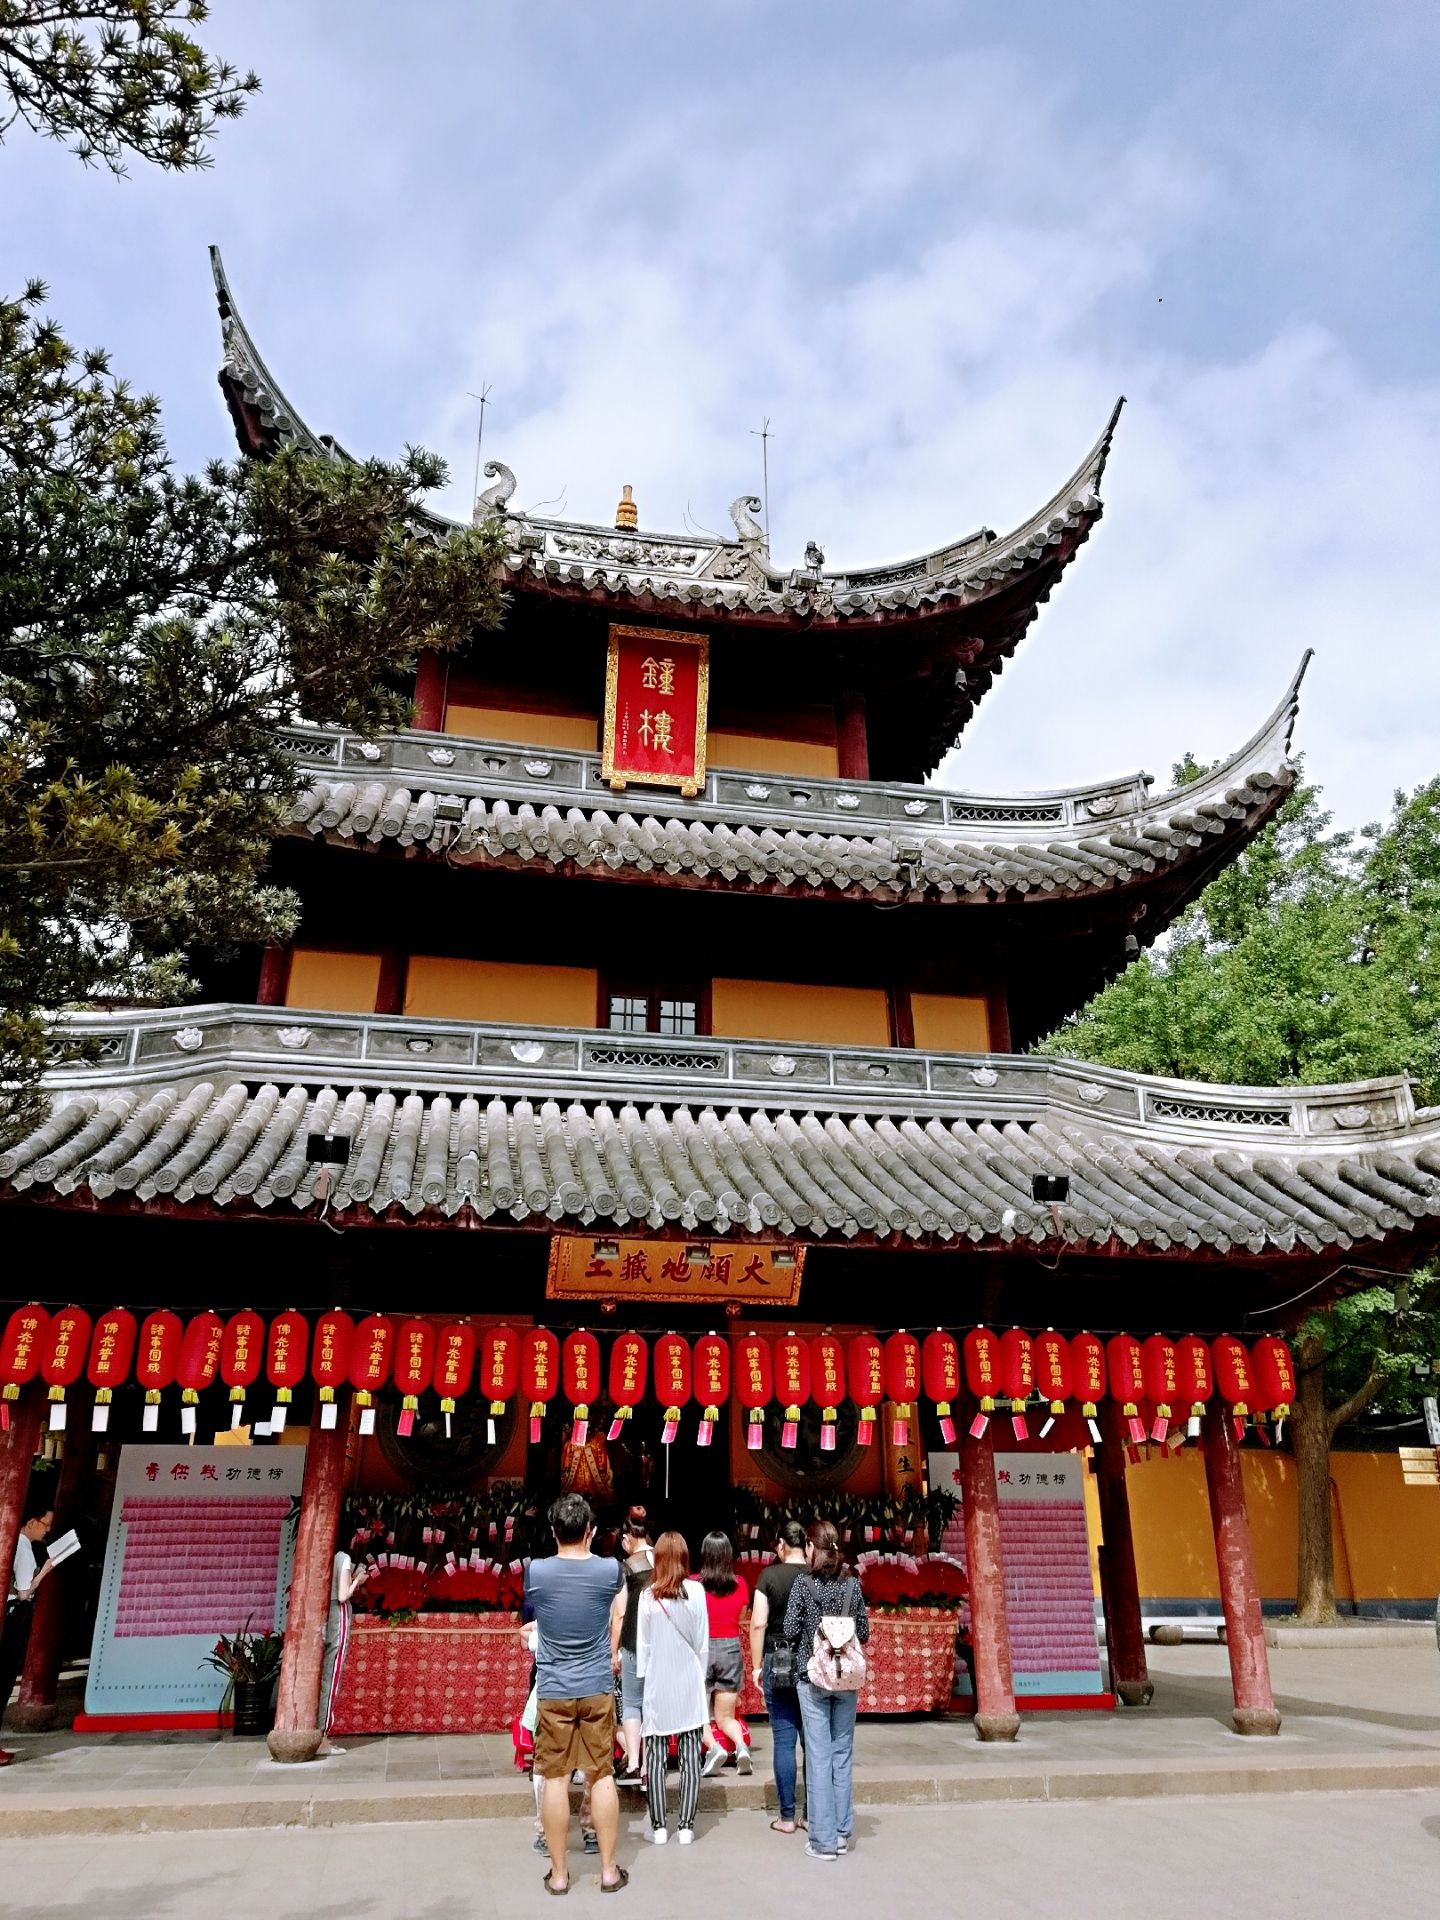 【携程攻略】上海龙华寺景点,龙华寺——上海著名古寺；龙华塔——上海著名古塔。每年龙华寺有敲钟…